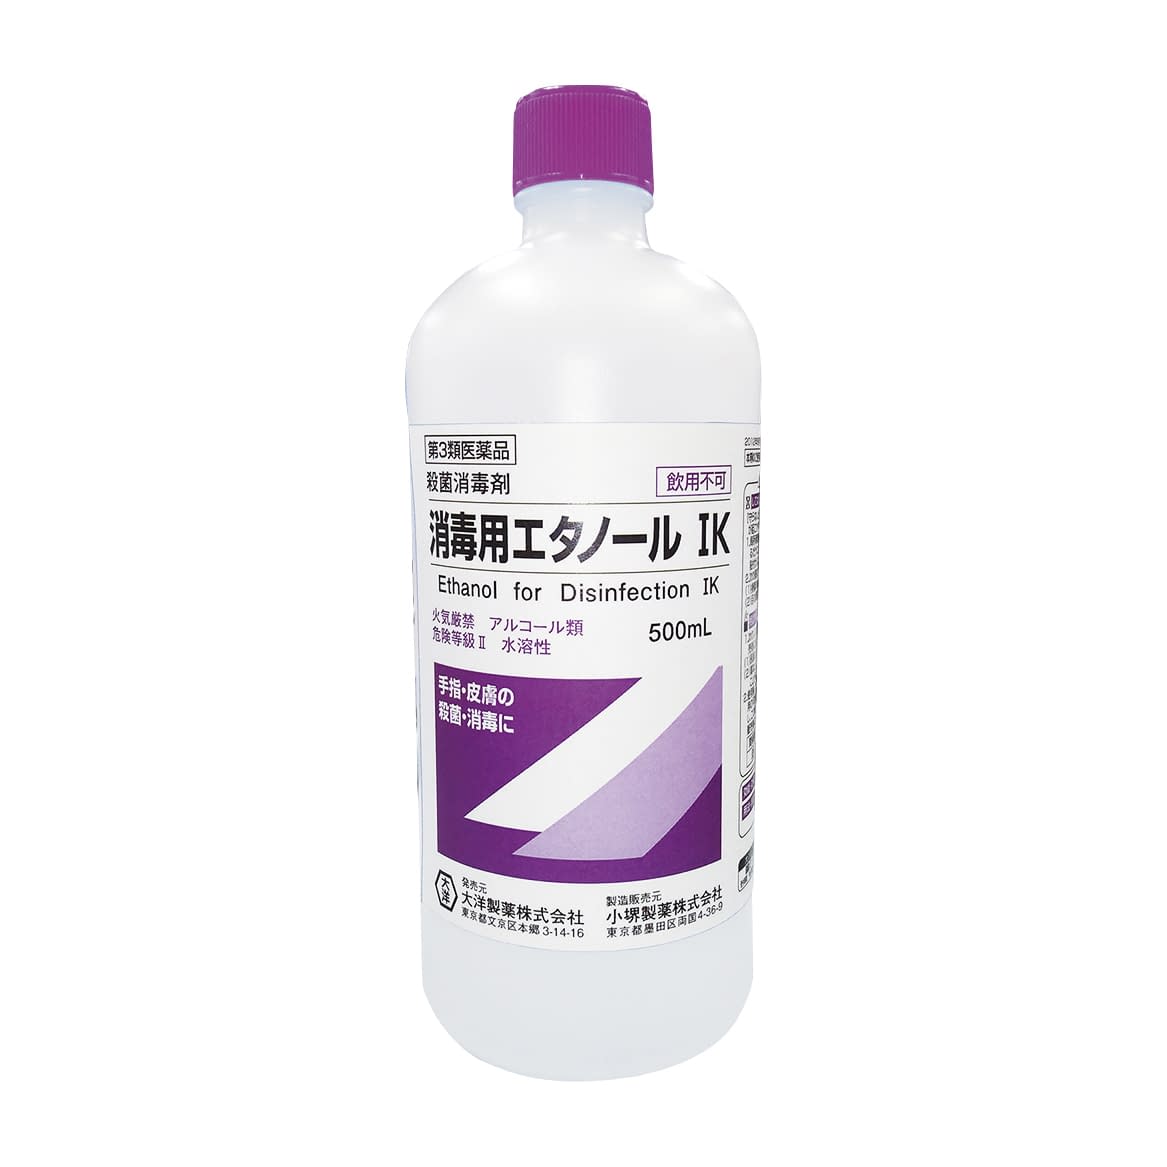 消毒用エタノールIK(医薬品) 500ML(ボトル)500ML(ﾎﾞﾄﾙ)(24-8803-01)【大洋製薬】(販売単位:1)